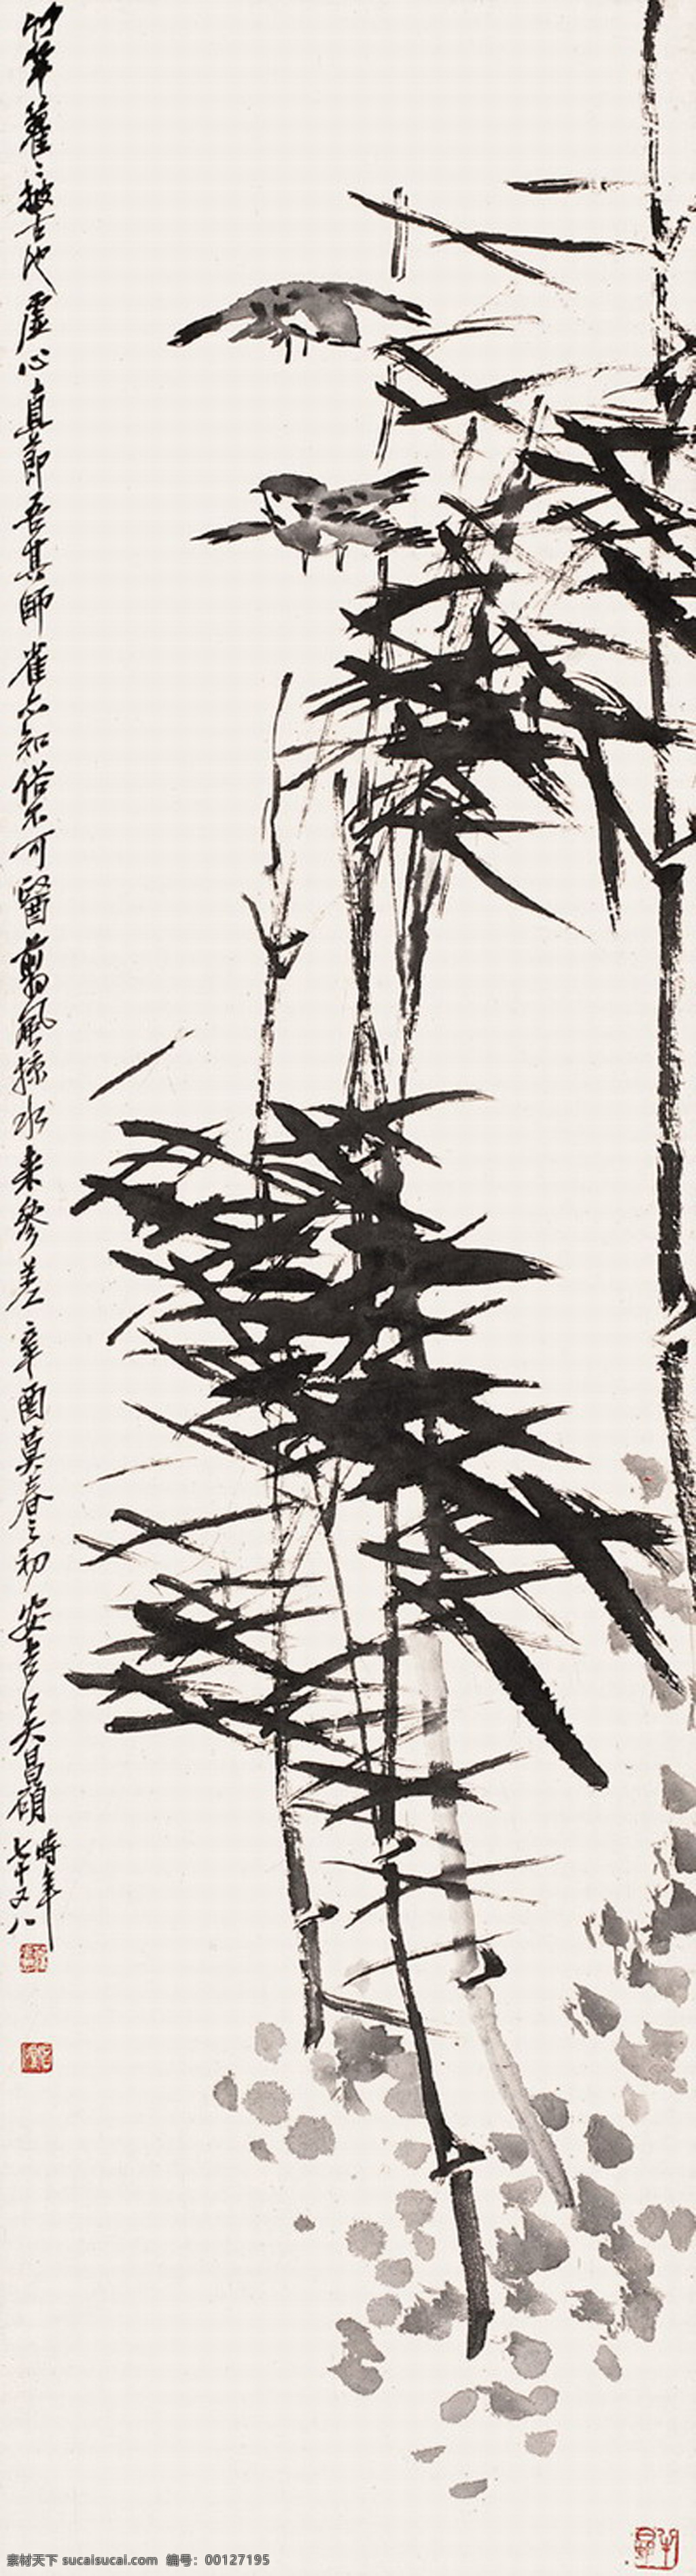 竹子水墨画 竹子 文化艺术 绘画书法 竹 设计图库 300